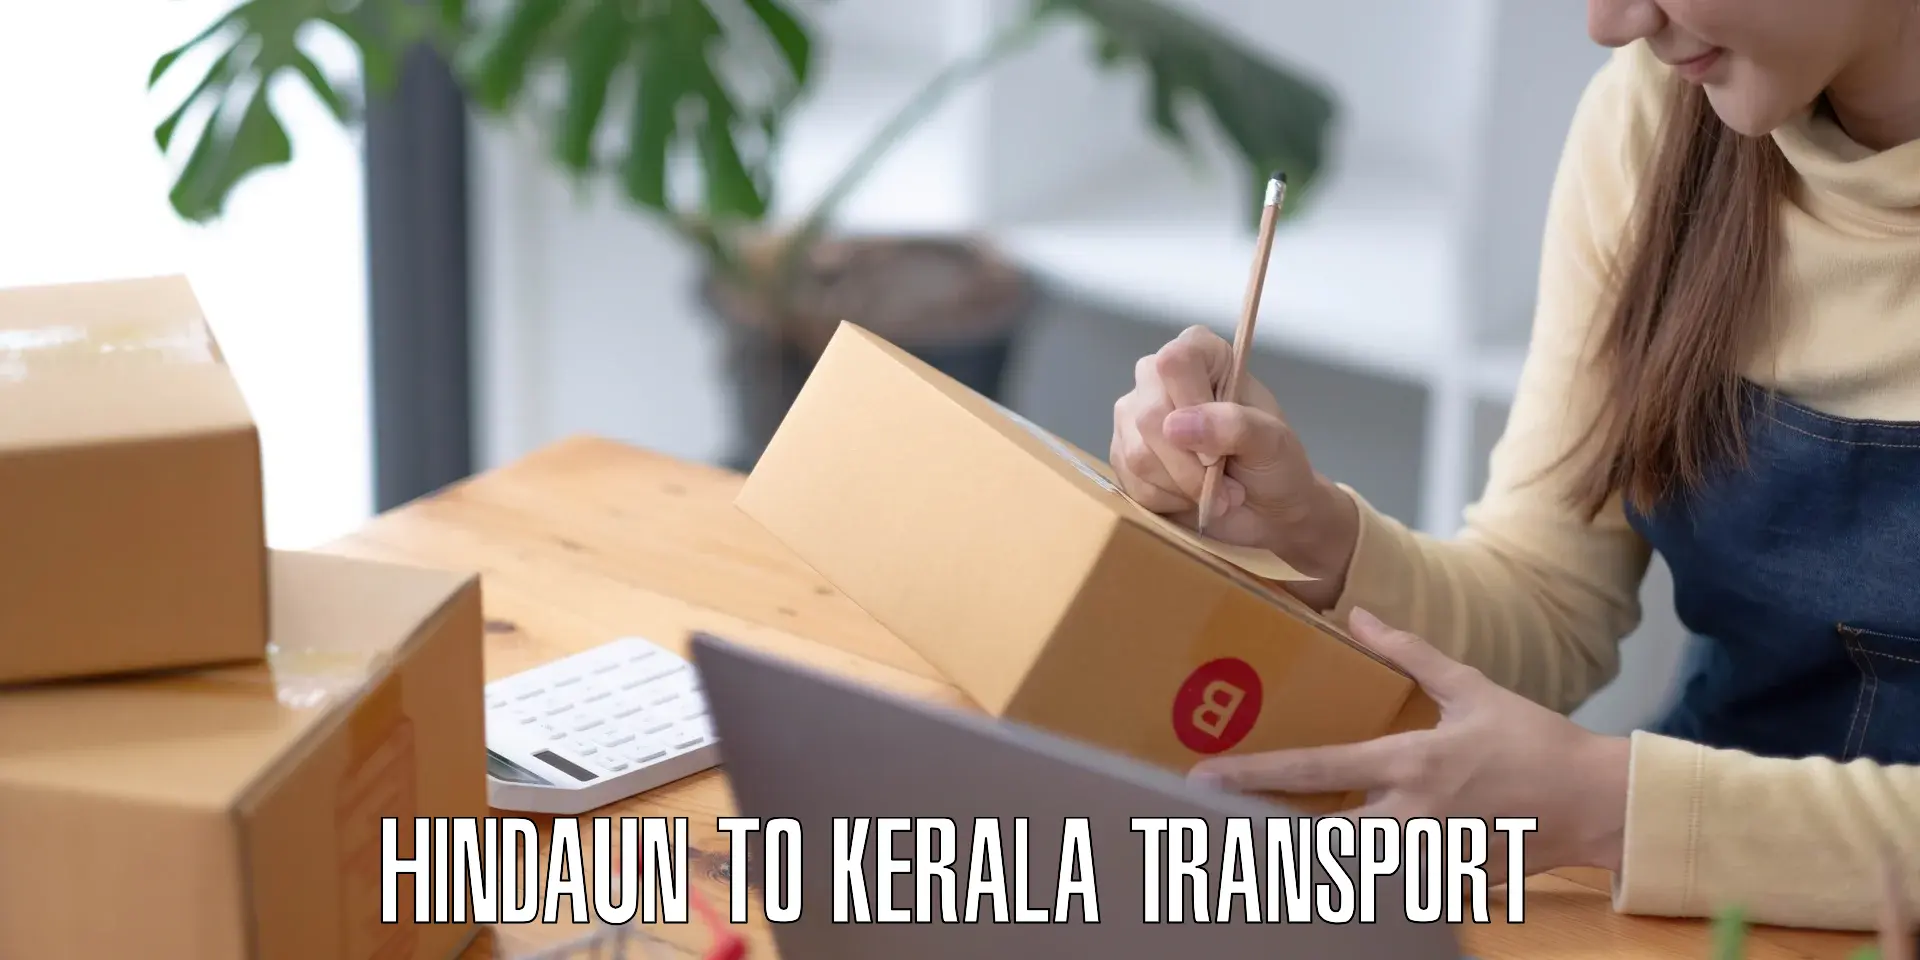 Interstate transport services Hindaun to Kerala